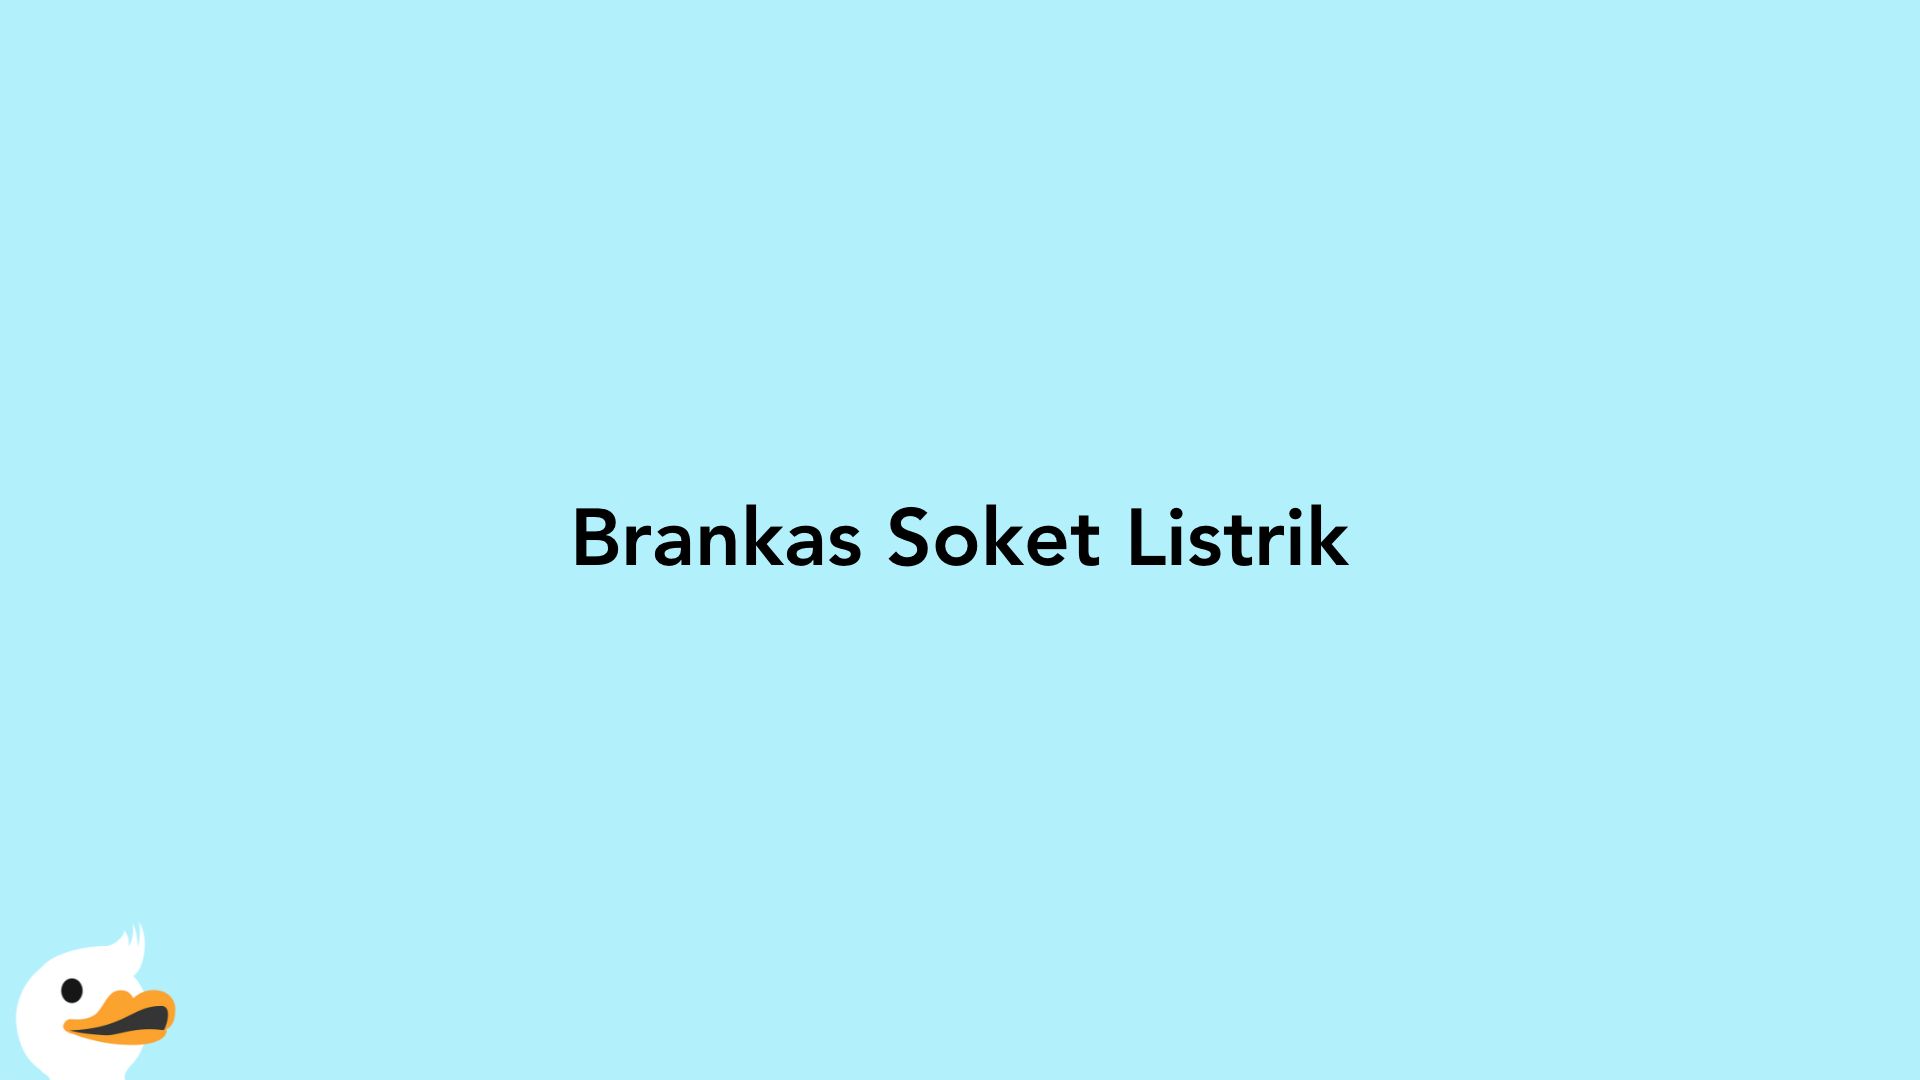 Brankas Soket Listrik